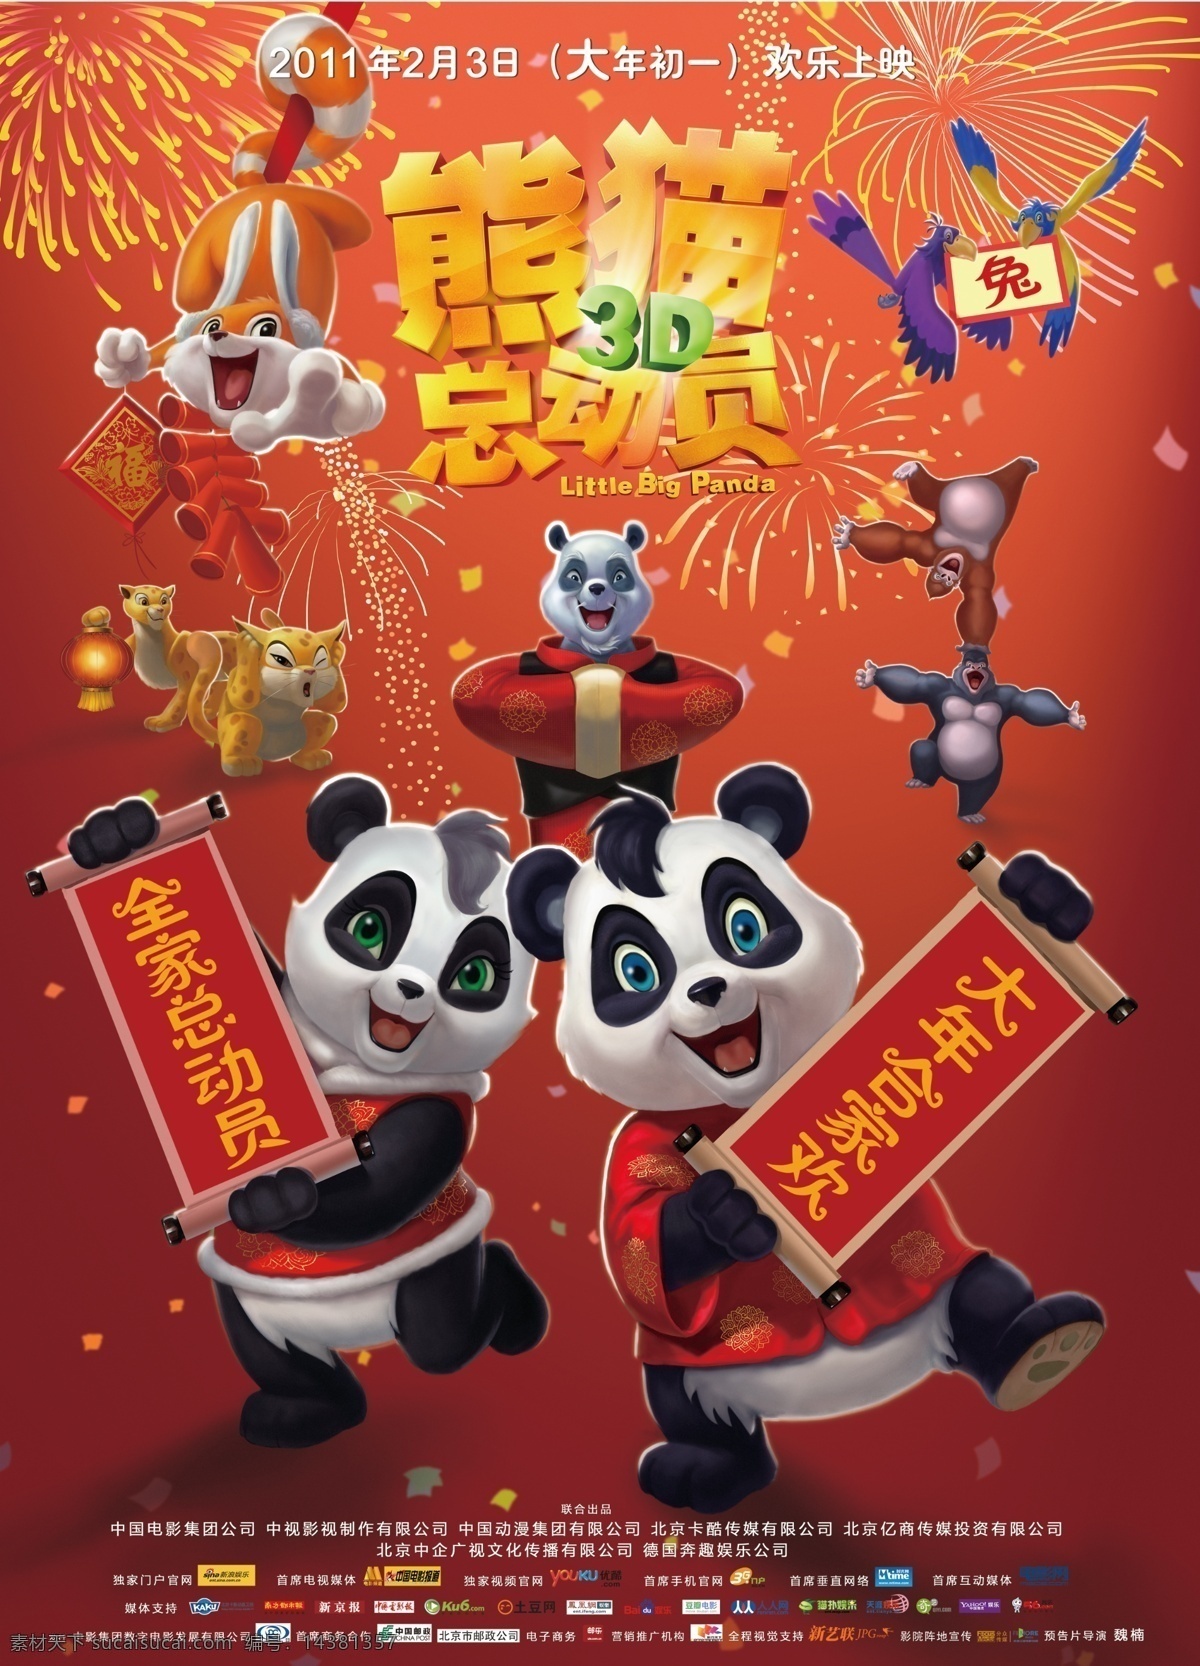 熊猫总动员 电影海报 熊猫 潘迪 潘妮 拜年的熊猫 拜年 对联 合家欢 喜庆 电影 海报 艺术字 影片 广告设计模板 源文件